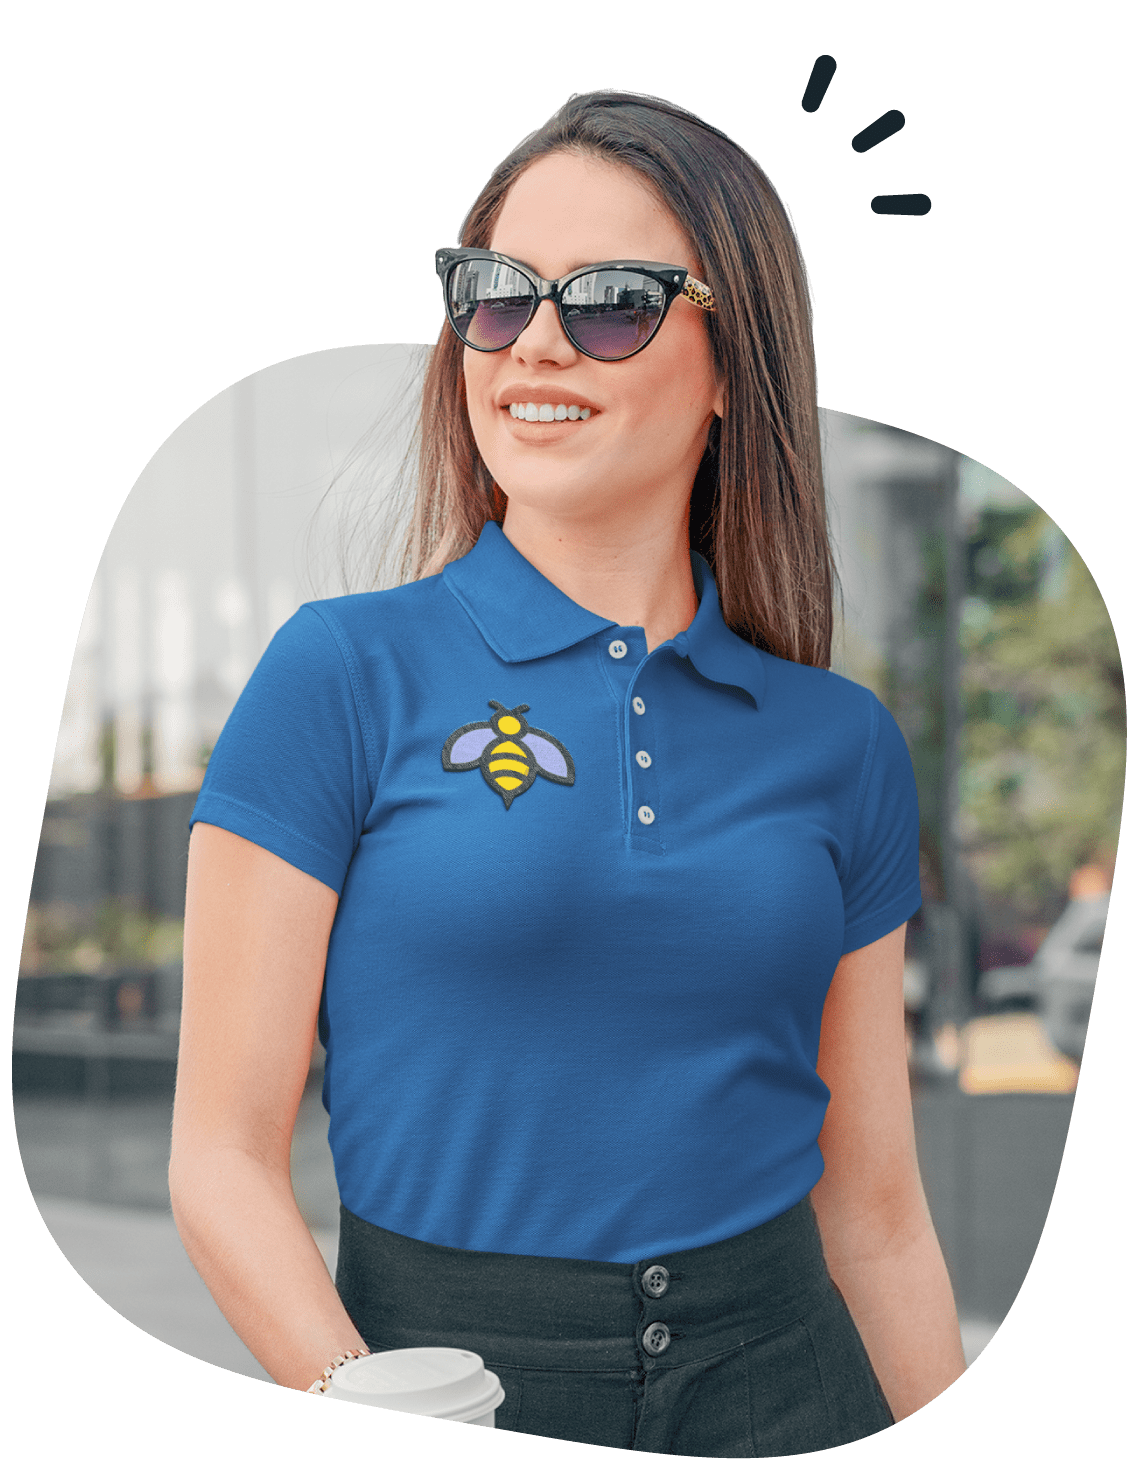 Custom Polo Shirts | Spreadshirt - No Minimum